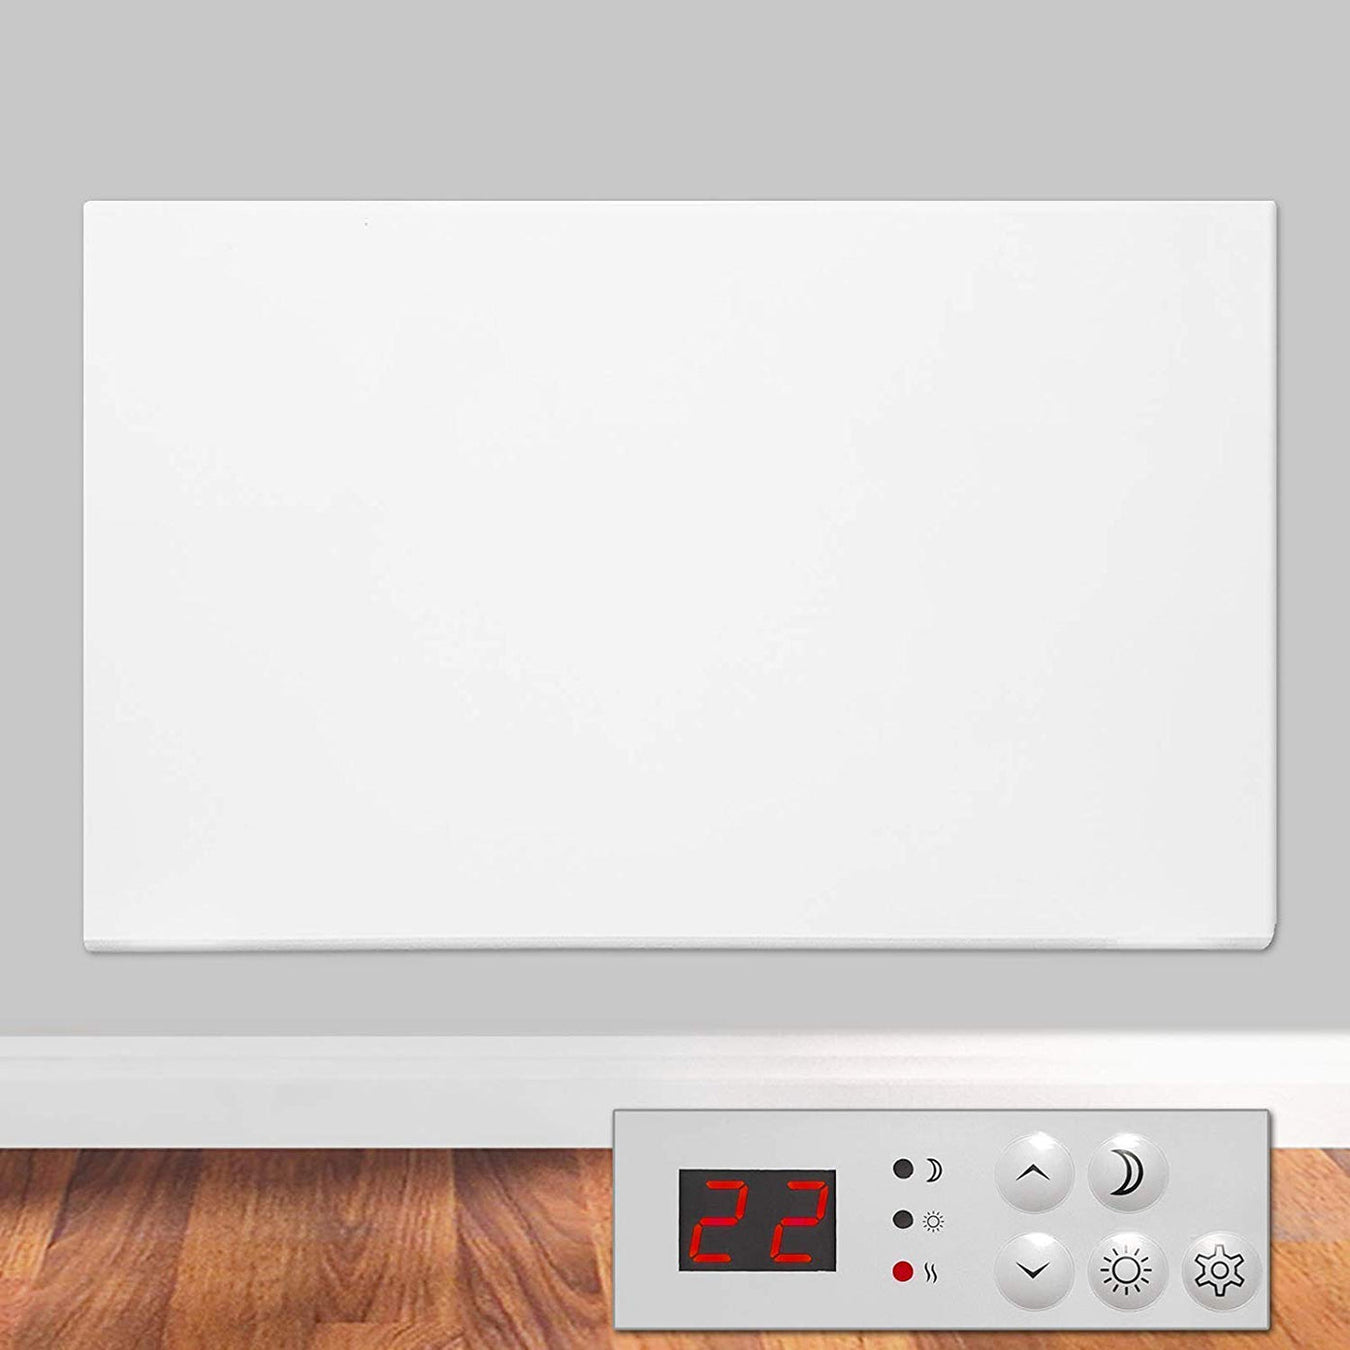 eco panel heater